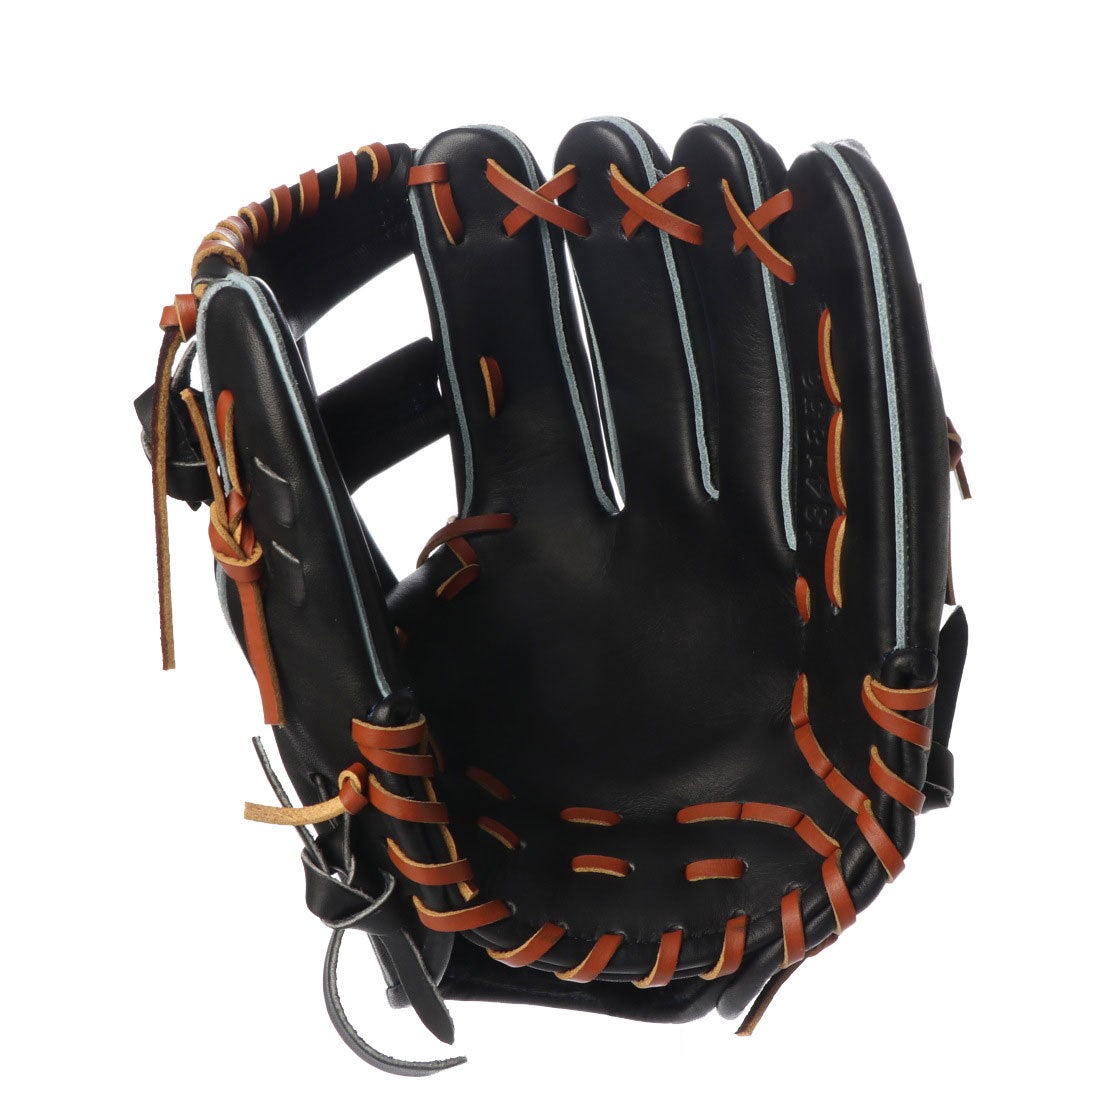 アンダーアーマー UNDER ARMOUR 硬式野球 野手用グラブ UA DL HB Infielder NY Glove (R) 1341856